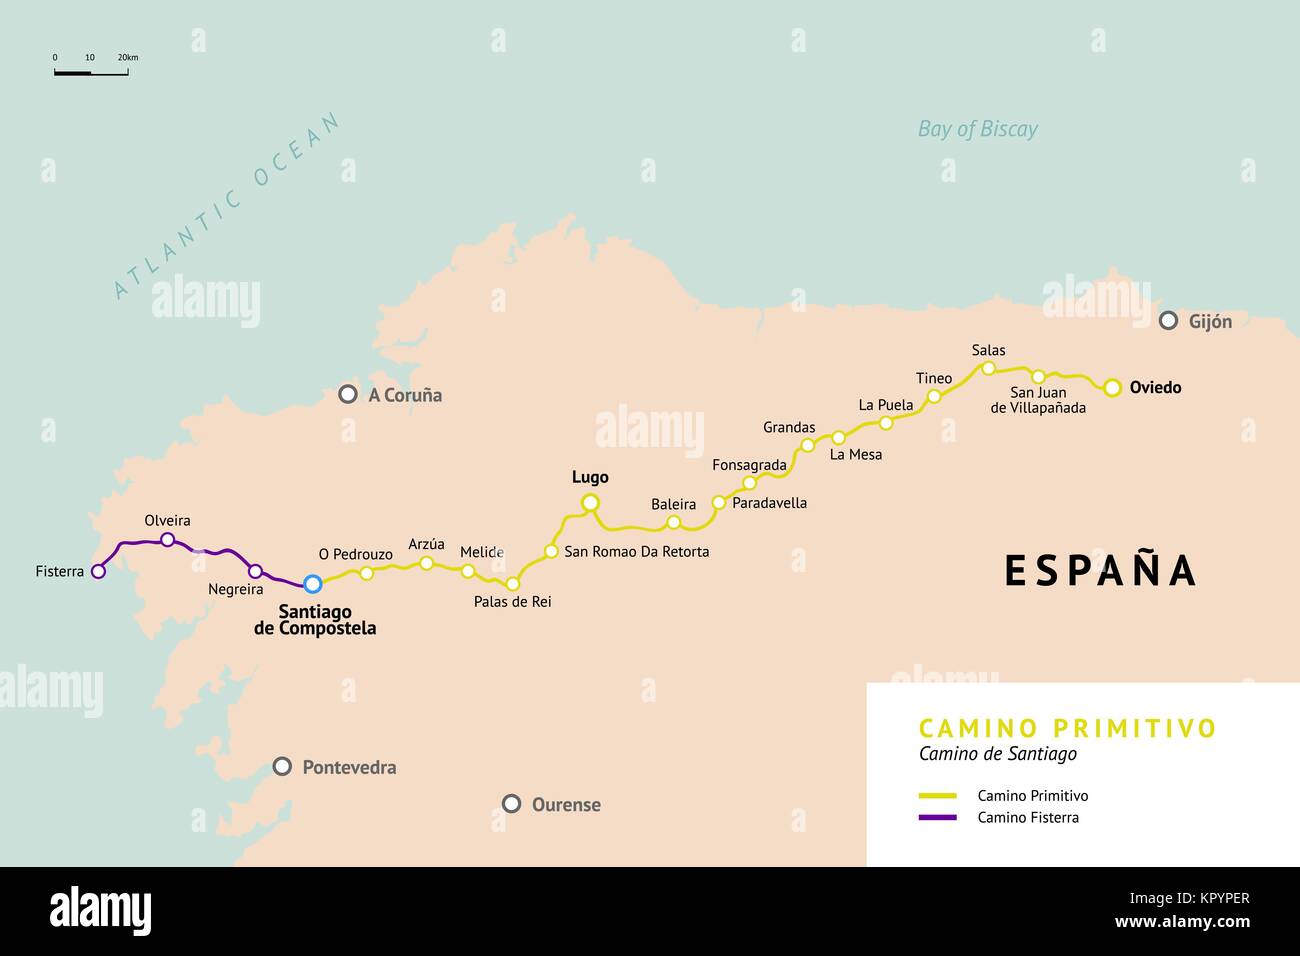 Camino Primitivo mappa. Percorso originale da Oviedo. Camino de Santiago o il modo di San Giacomo. Antico percorso di pellegrinaggio a Santiago de Compostela su Illustrazione Vettoriale